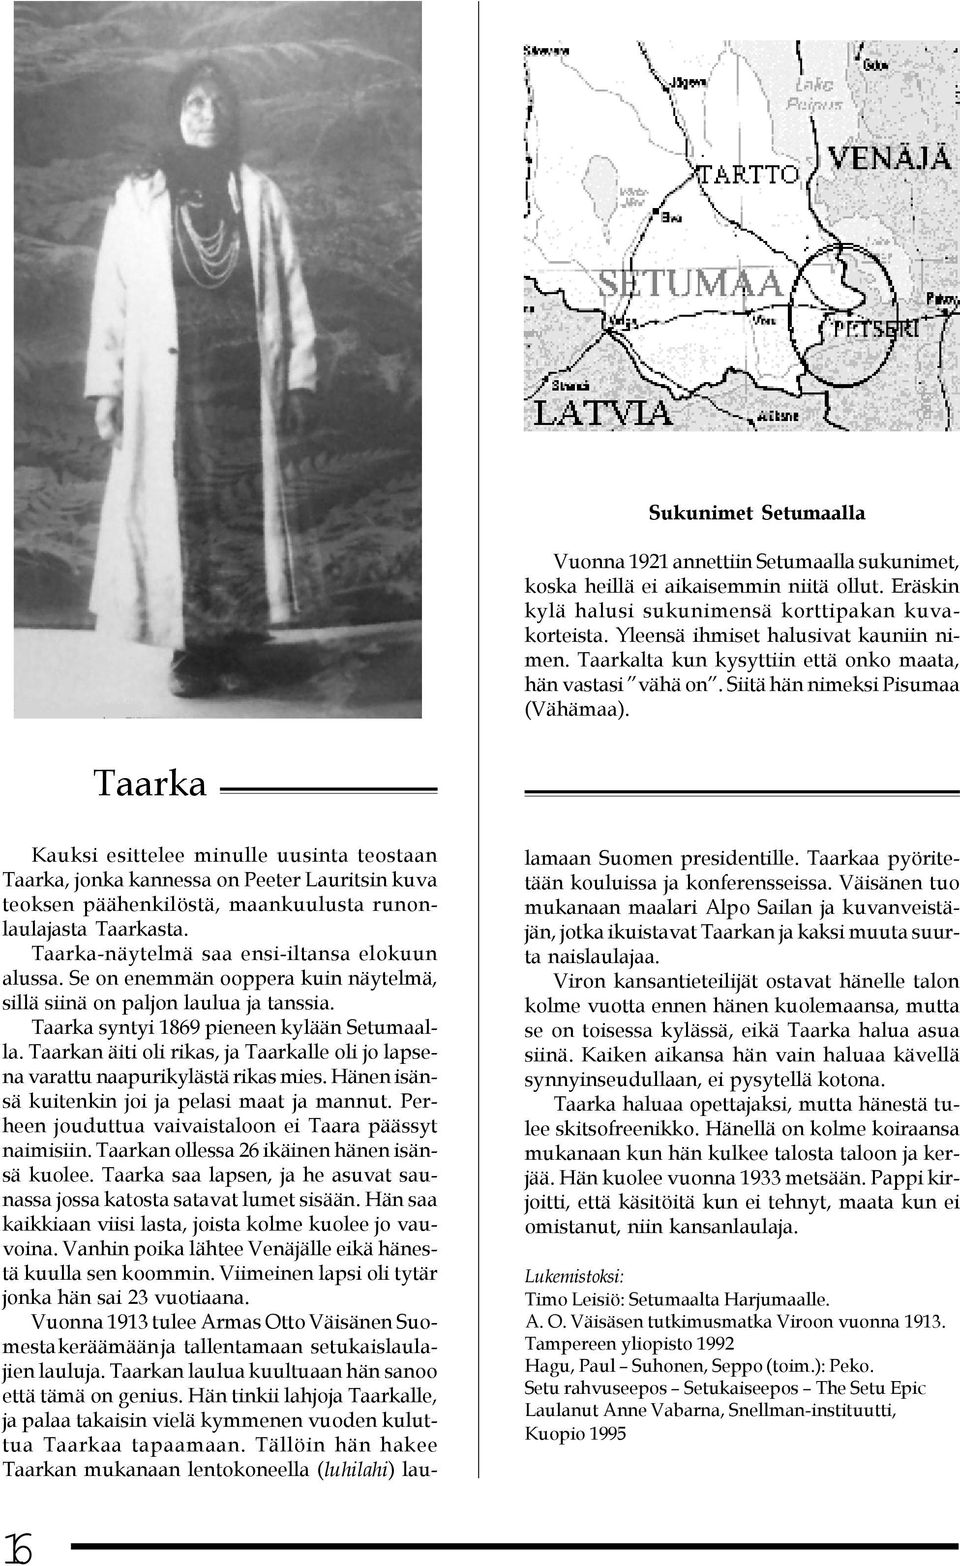 Taarka Kauksi esittelee minulle uusinta teostaan Taarka, jonka kannessa on Peeter Lauritsin kuva teoksen päähenkilöstä, maankuulusta runonlaulajasta Taarkasta.